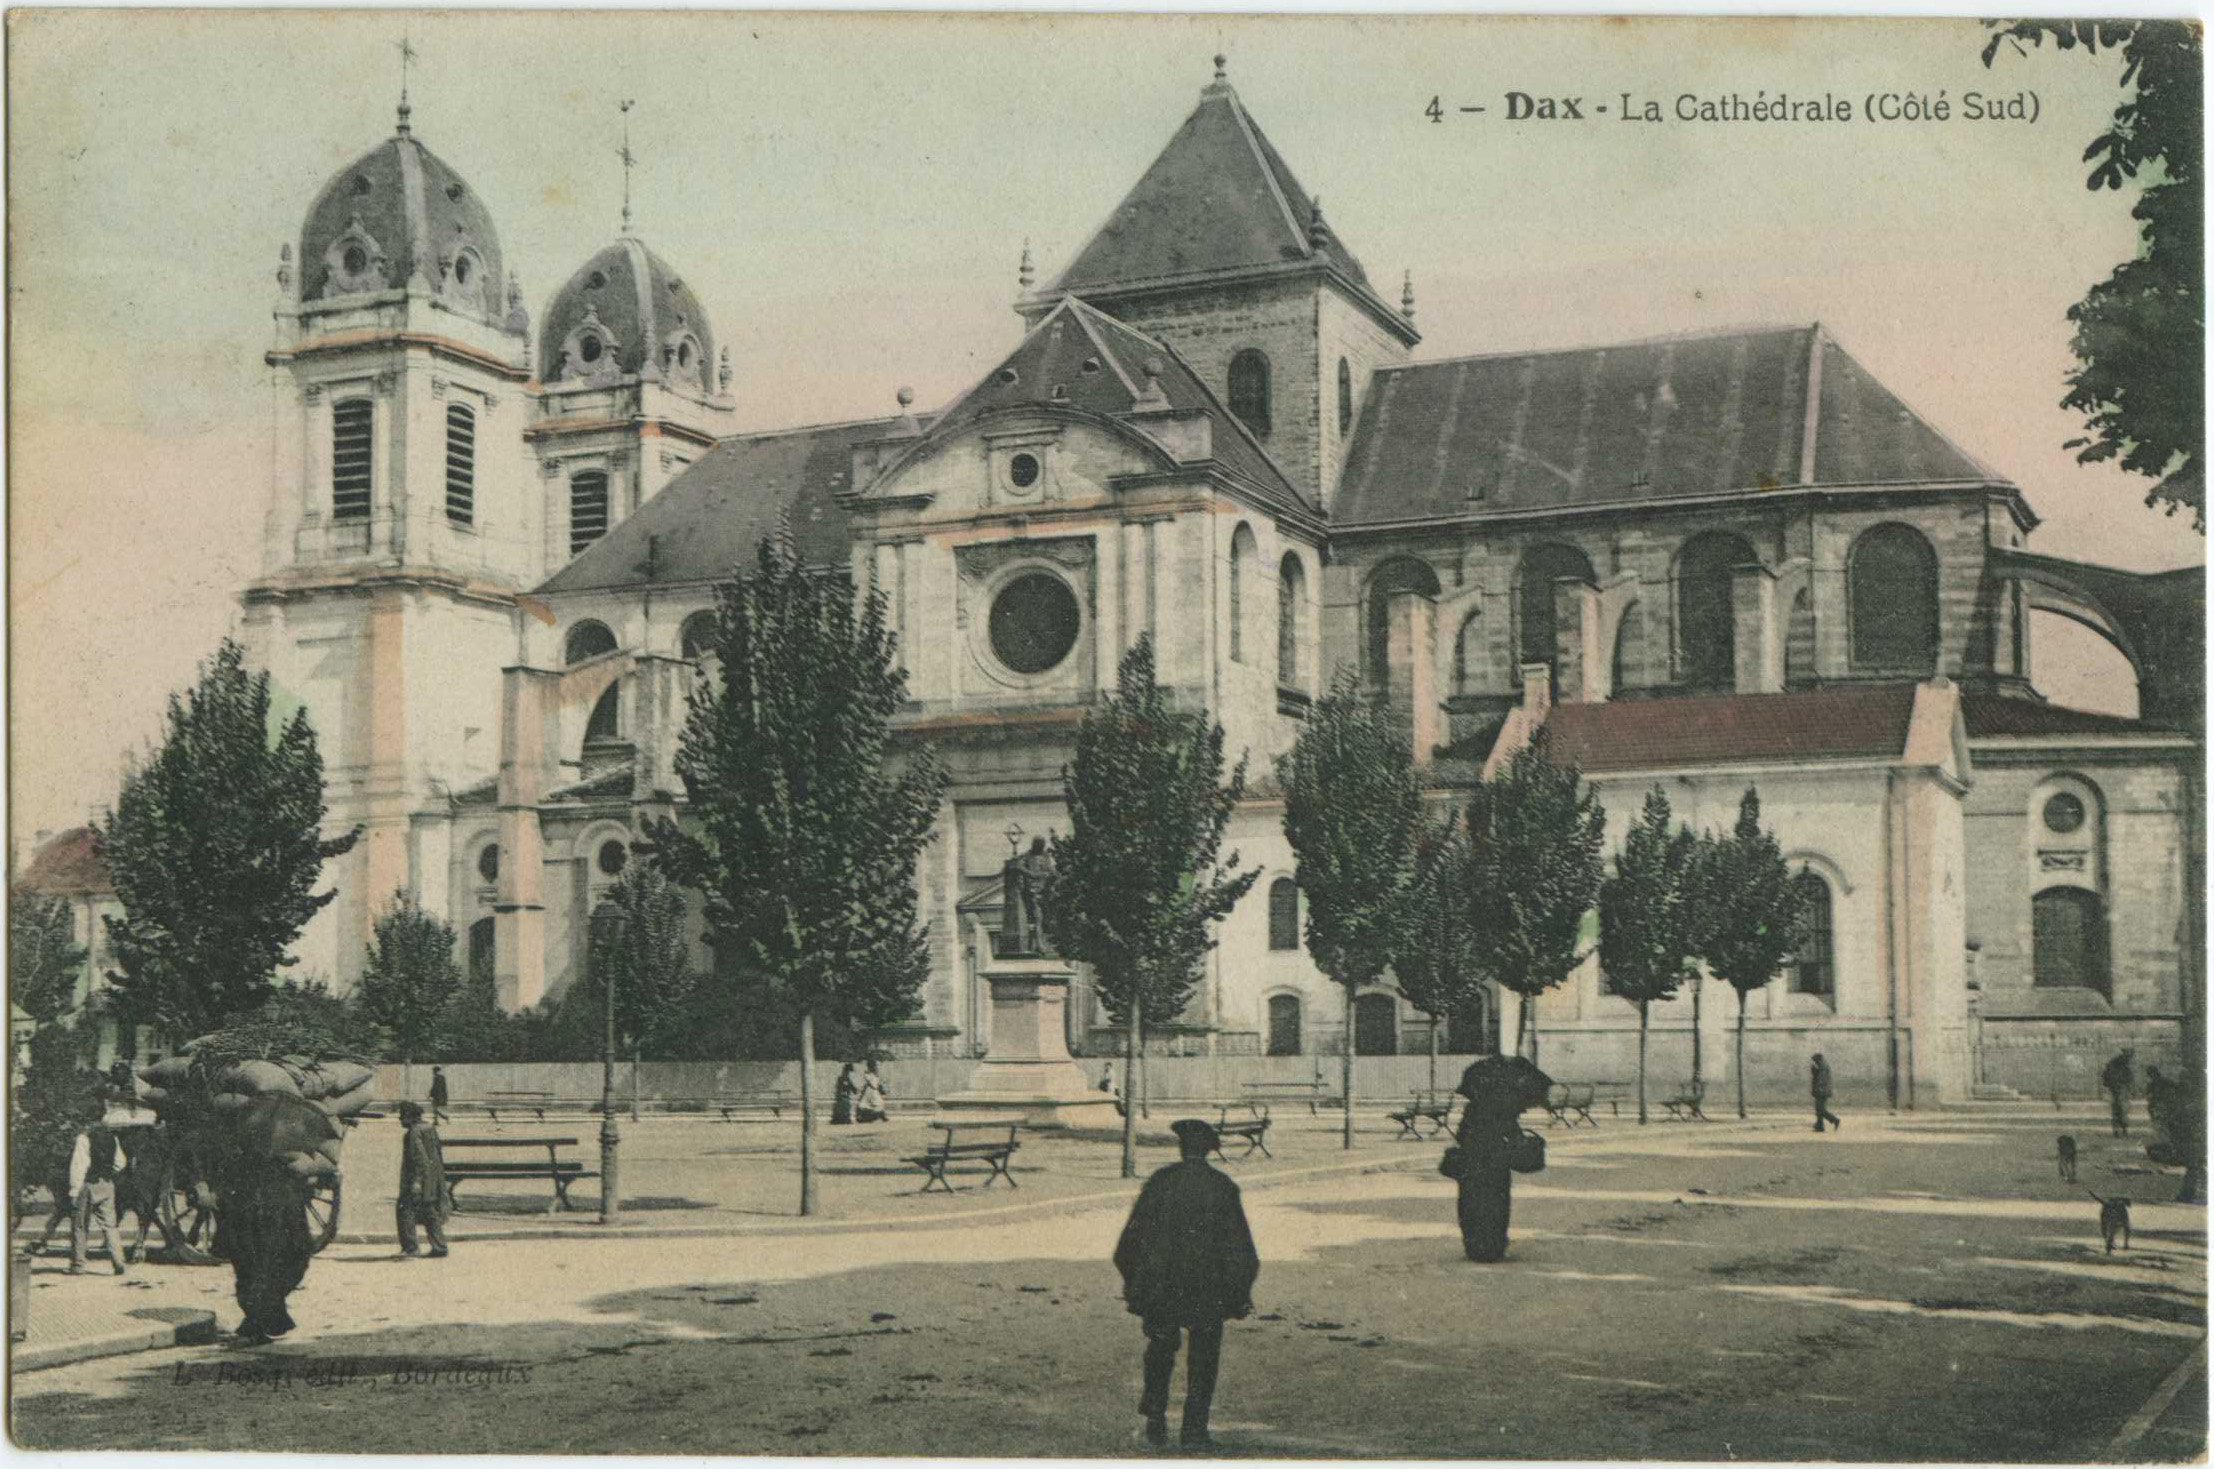 Dax - La Cathédrale (Côté Sud)